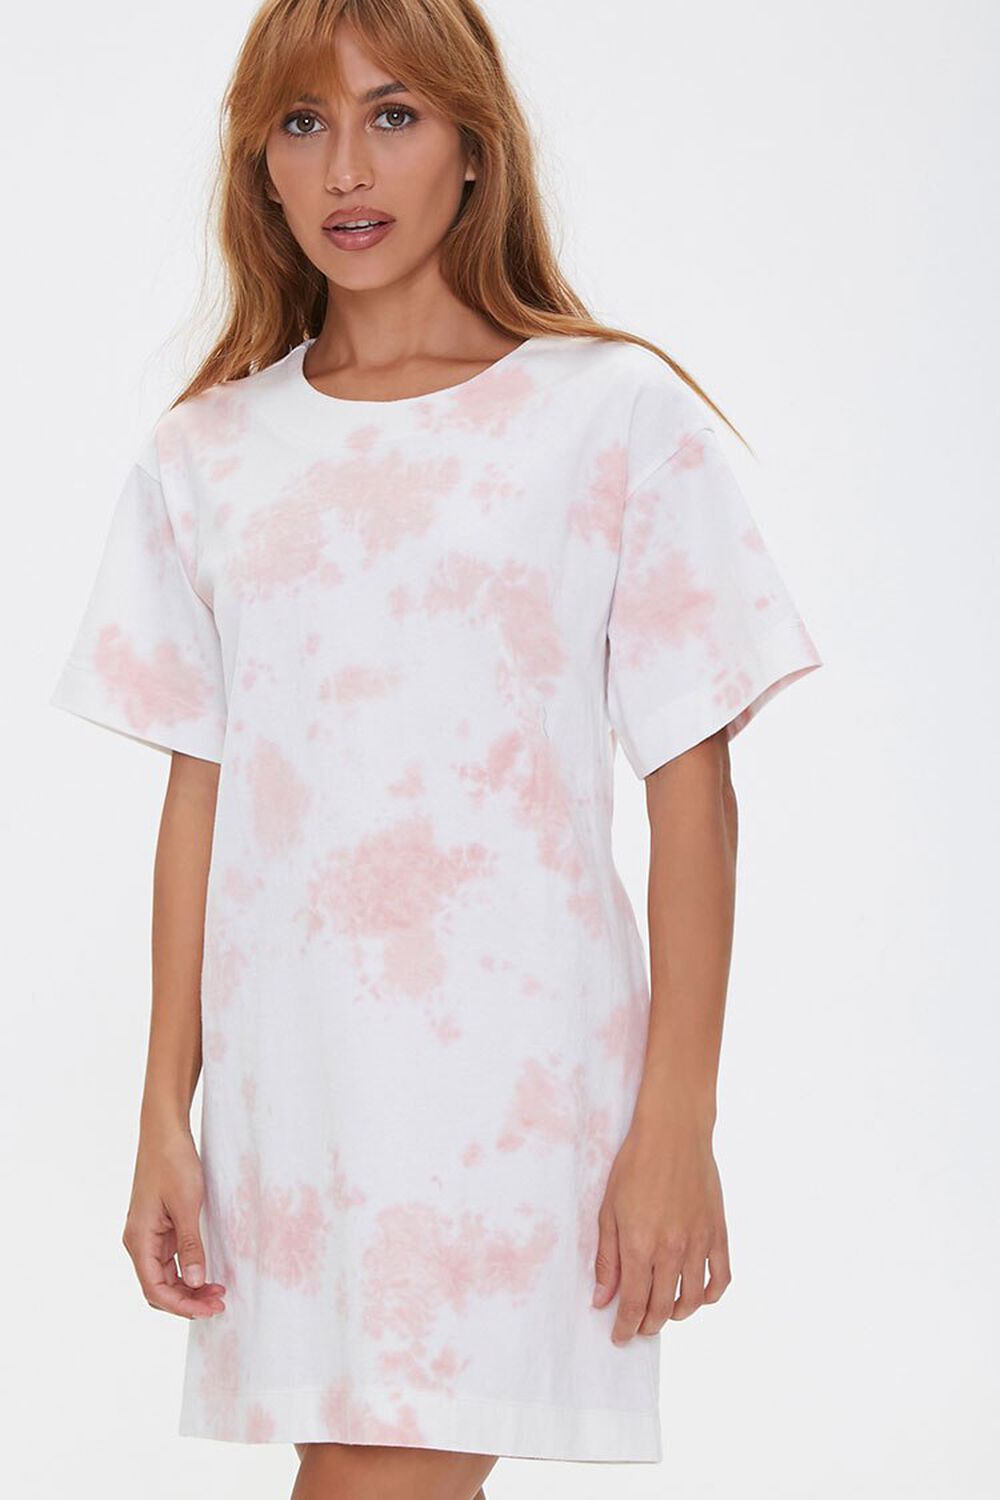 ROSE/WHITE Tie-Dye Cutout T-Shirt Dress, image 2